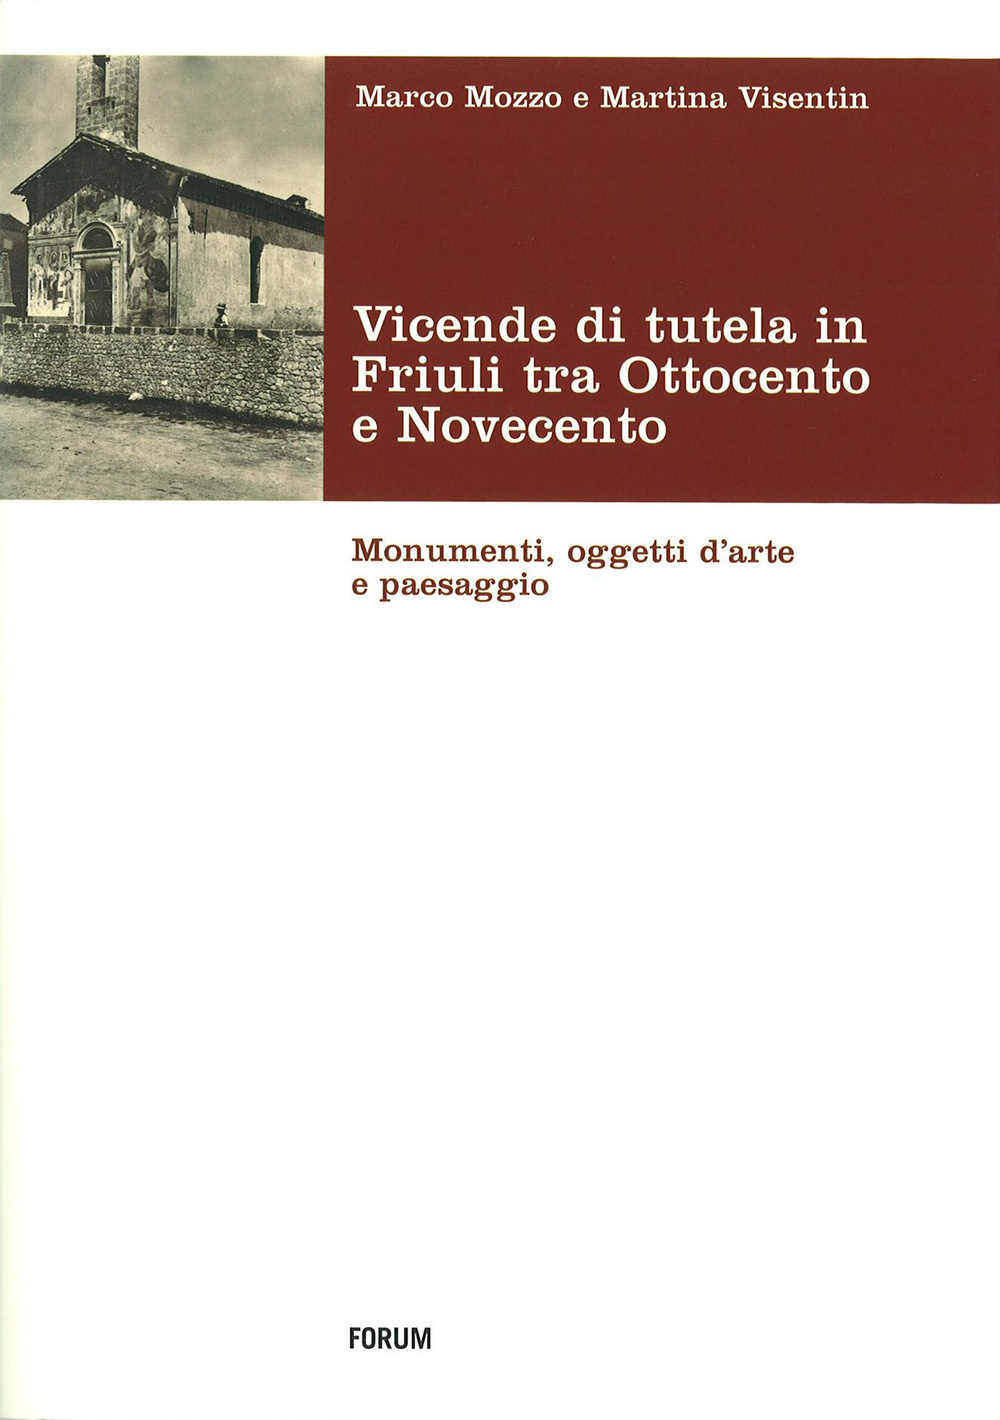 Vicende di tutela in Friuli tra Ottocento e Novecento. Monumenti, oggetti d'arte e paesaggio